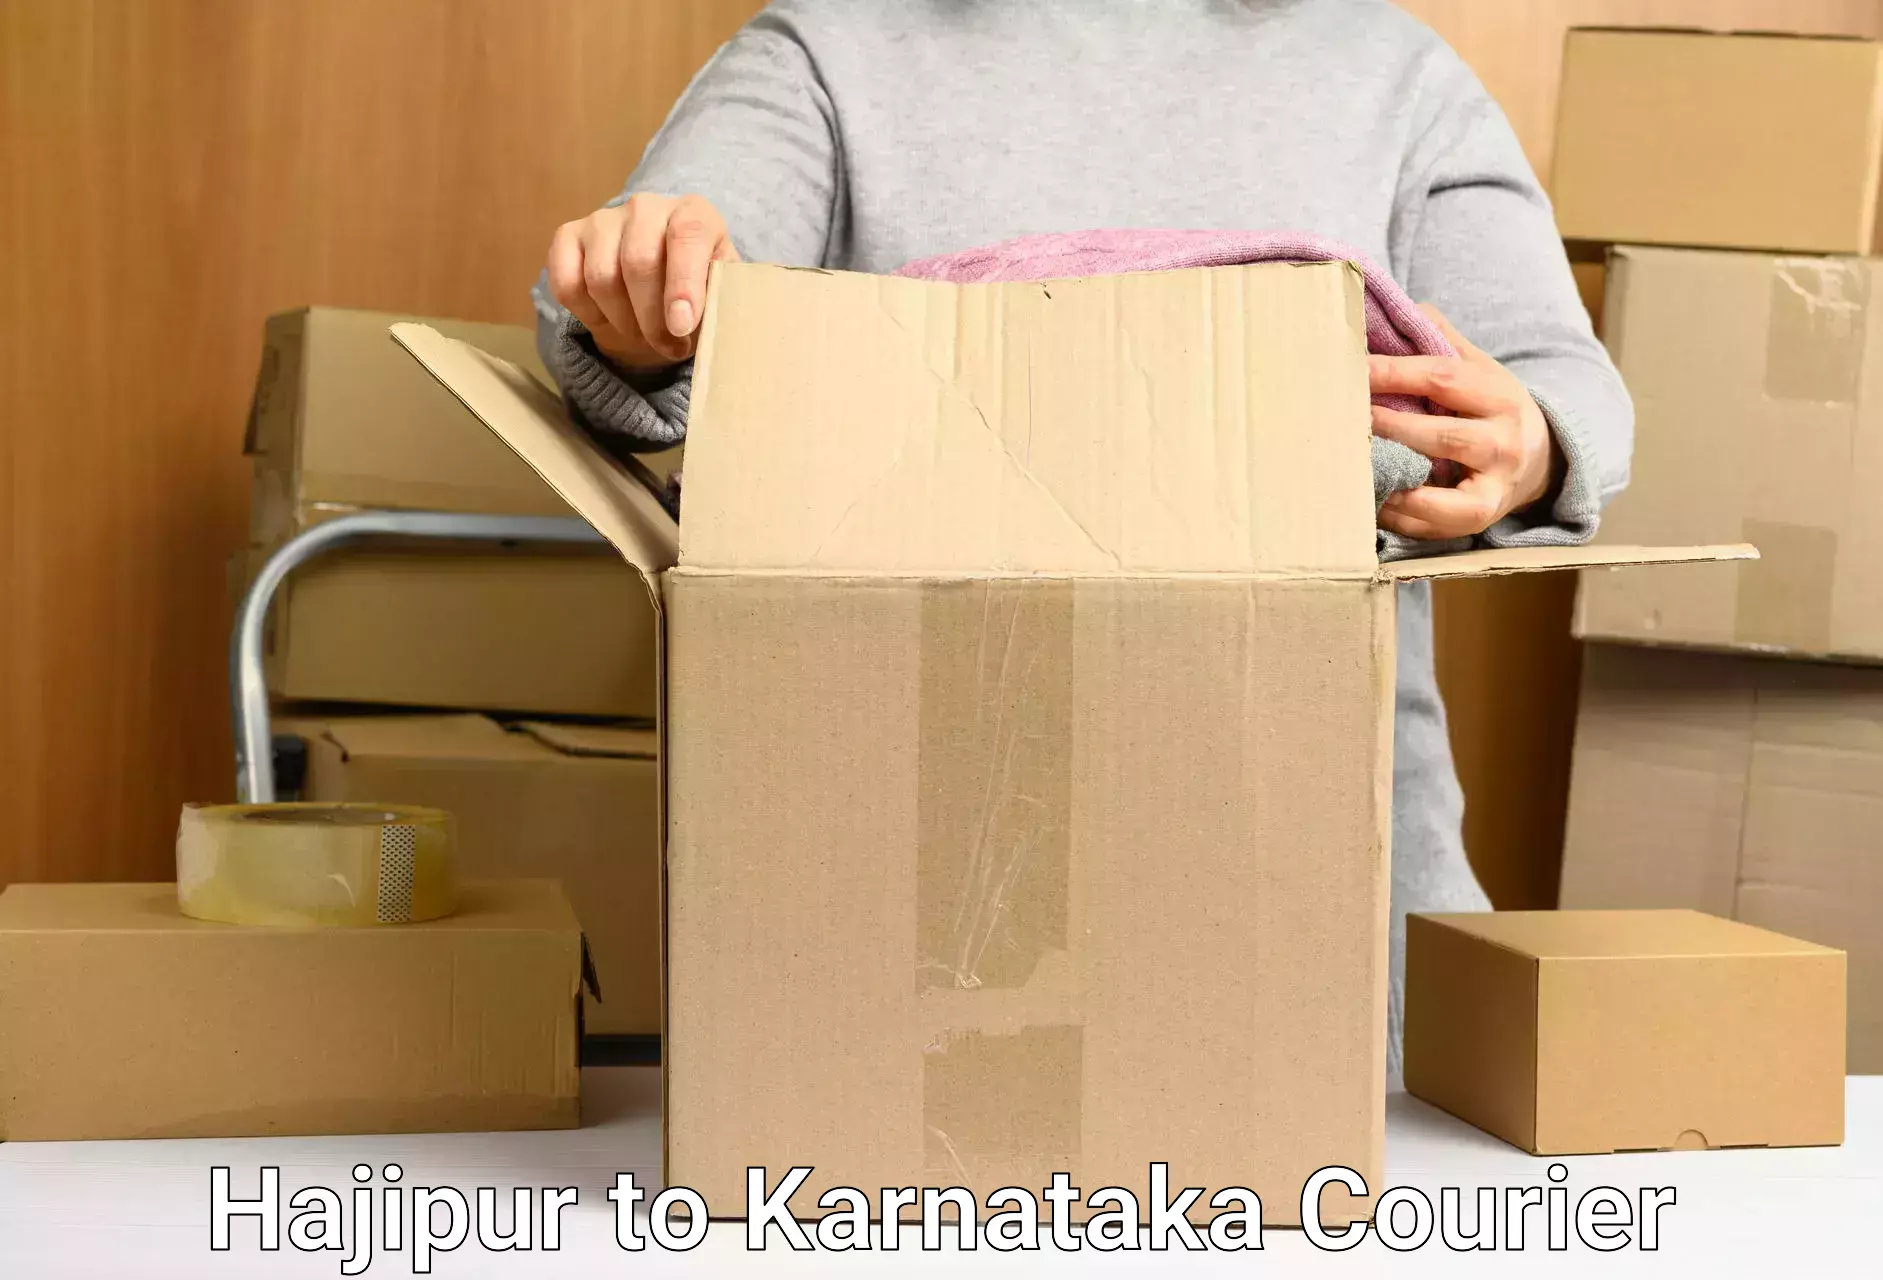 Fragile item shipping Hajipur to Vijayapura